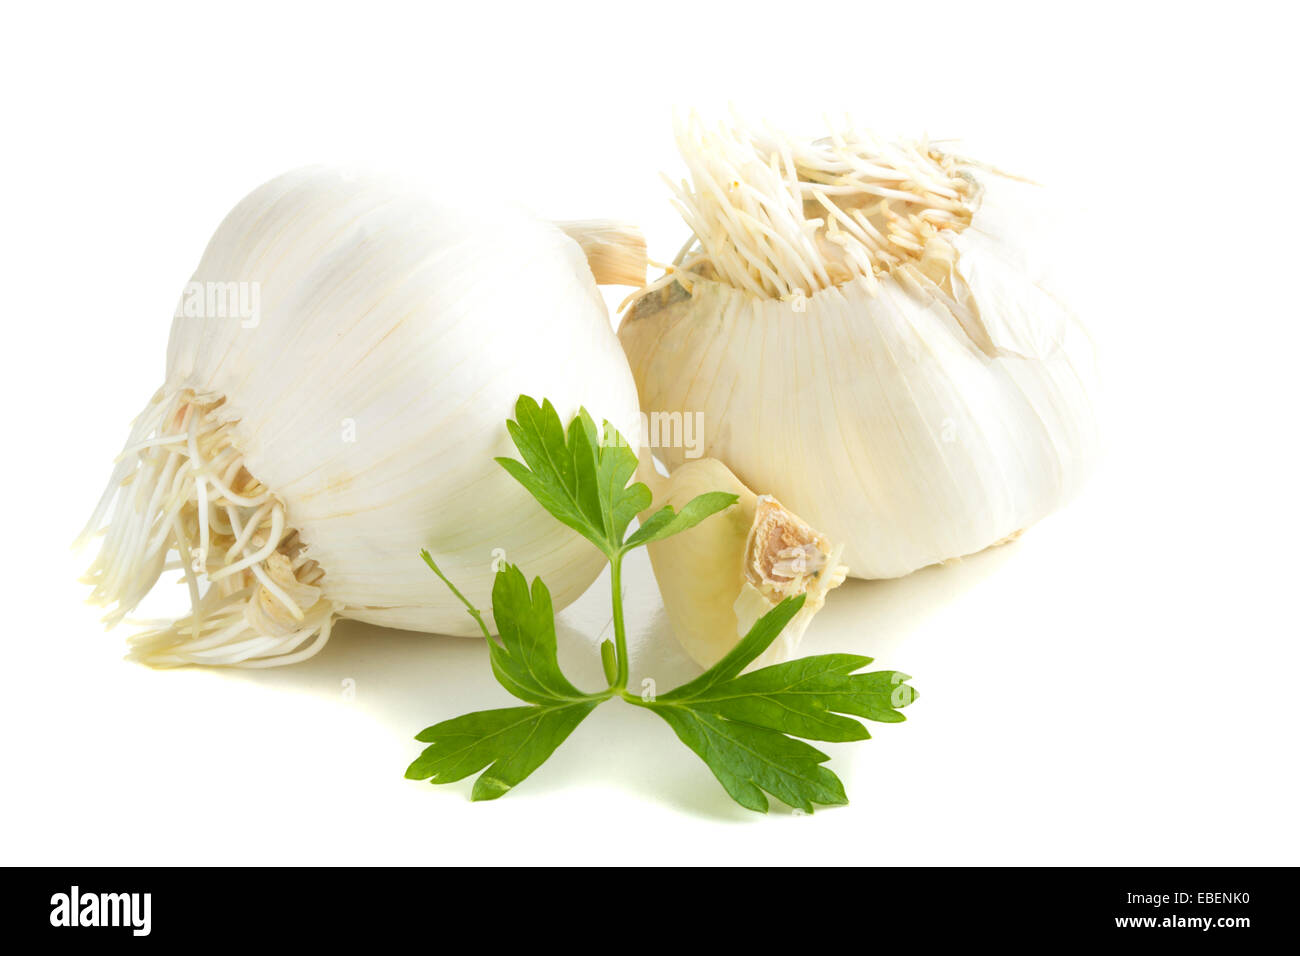 Bulbo di aglio e prezzemolo e isolato su sfondo bianco Foto Stock